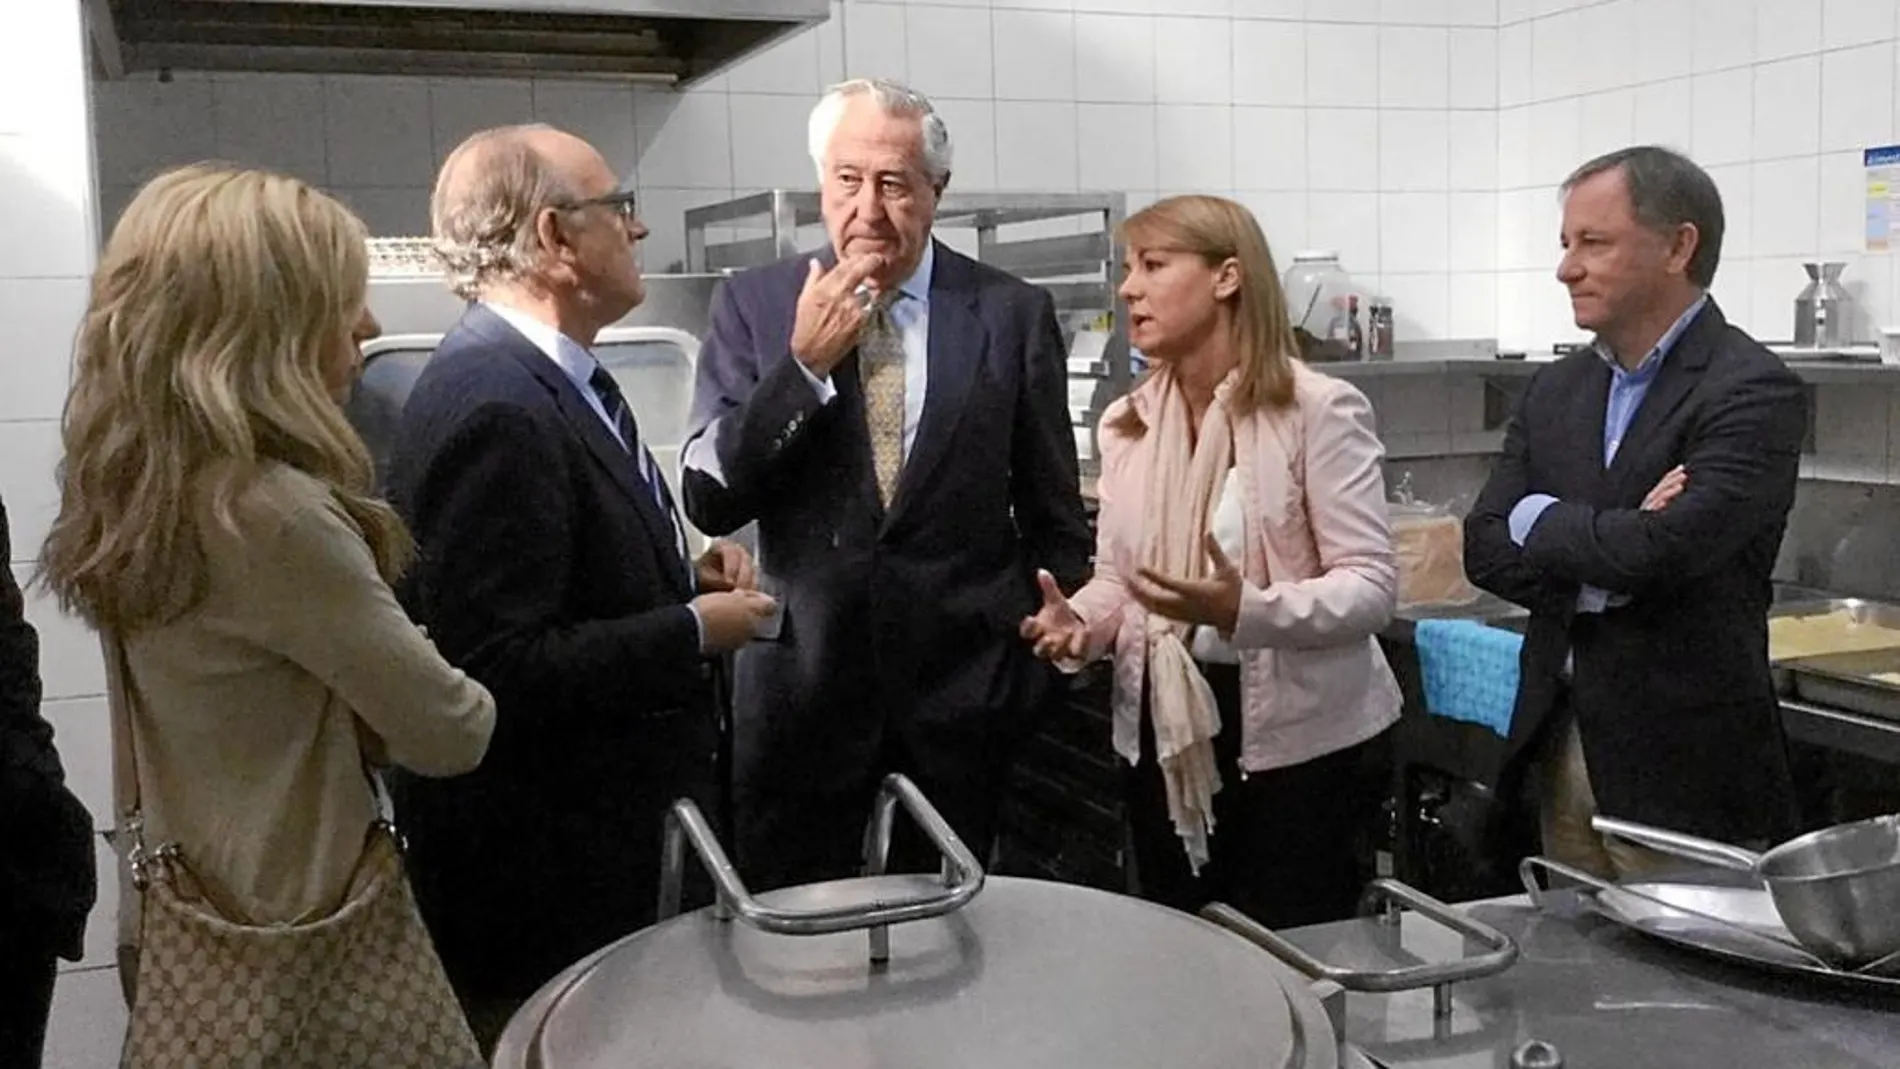 Juan Carlos Moragues y Susana Camarero con Antonio Casanova durante la visita de ayer en la Casa Caridad tras anunciar la donación